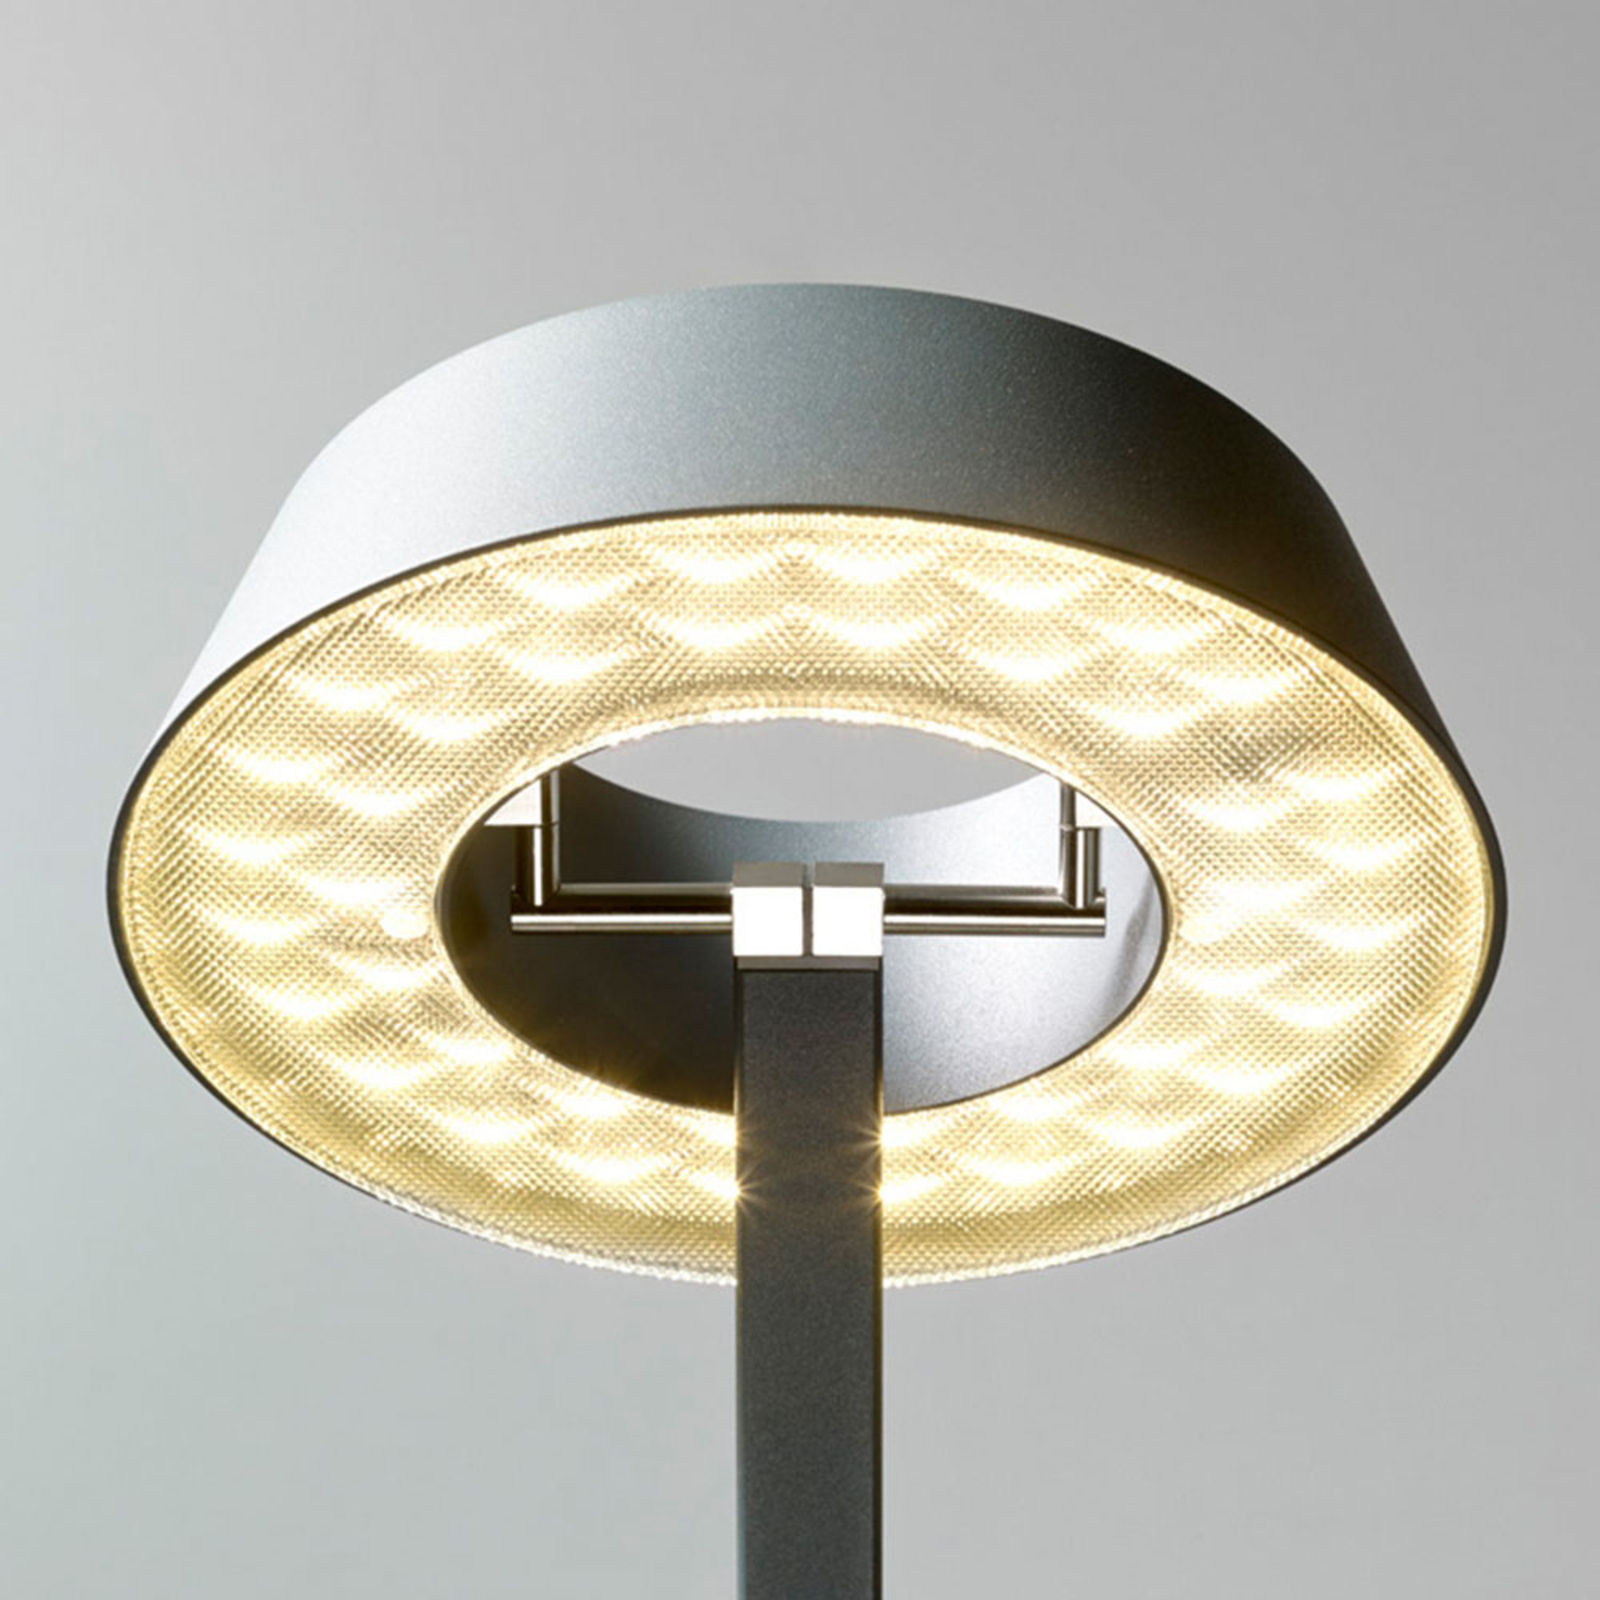 OLIGO Glance LED-Tischlampe gebogen grau matt